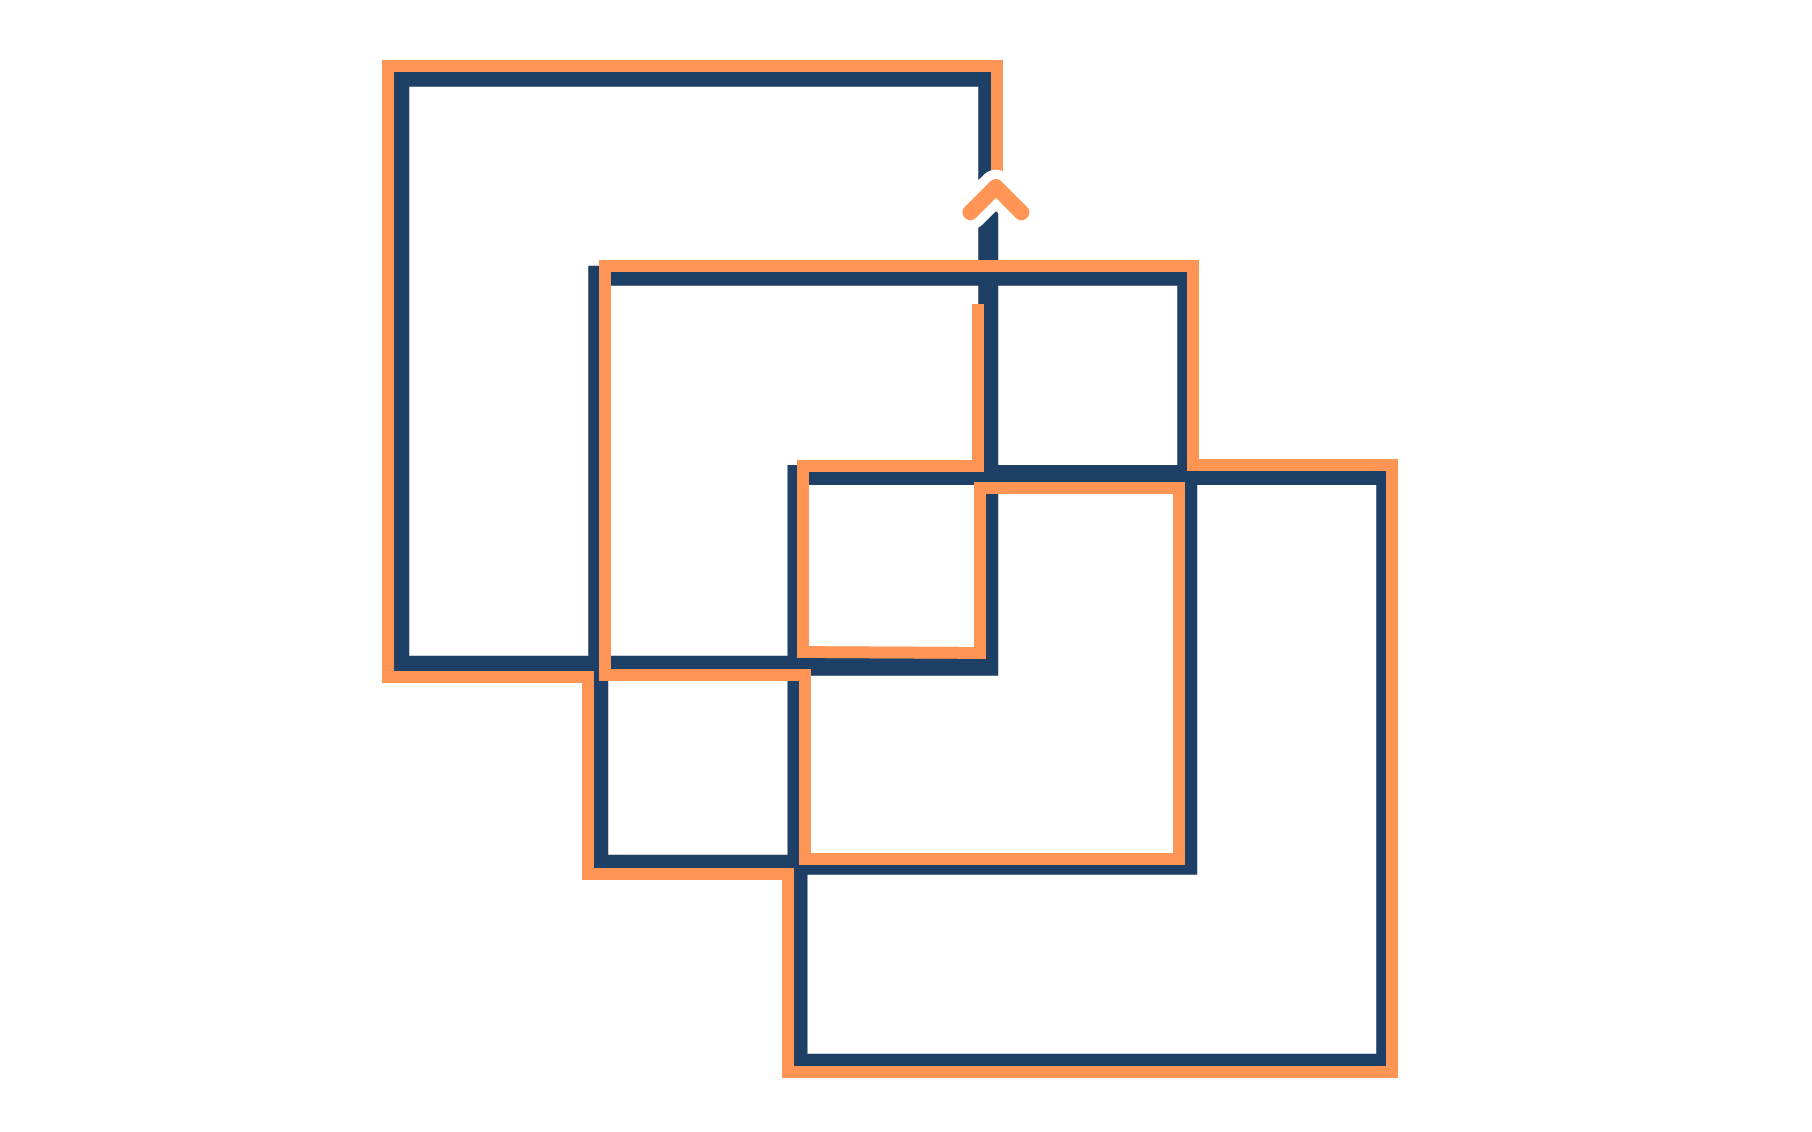 иллюстрация 2 варианта решения головоломки Льюиса Кэрролла с тремя квадратами